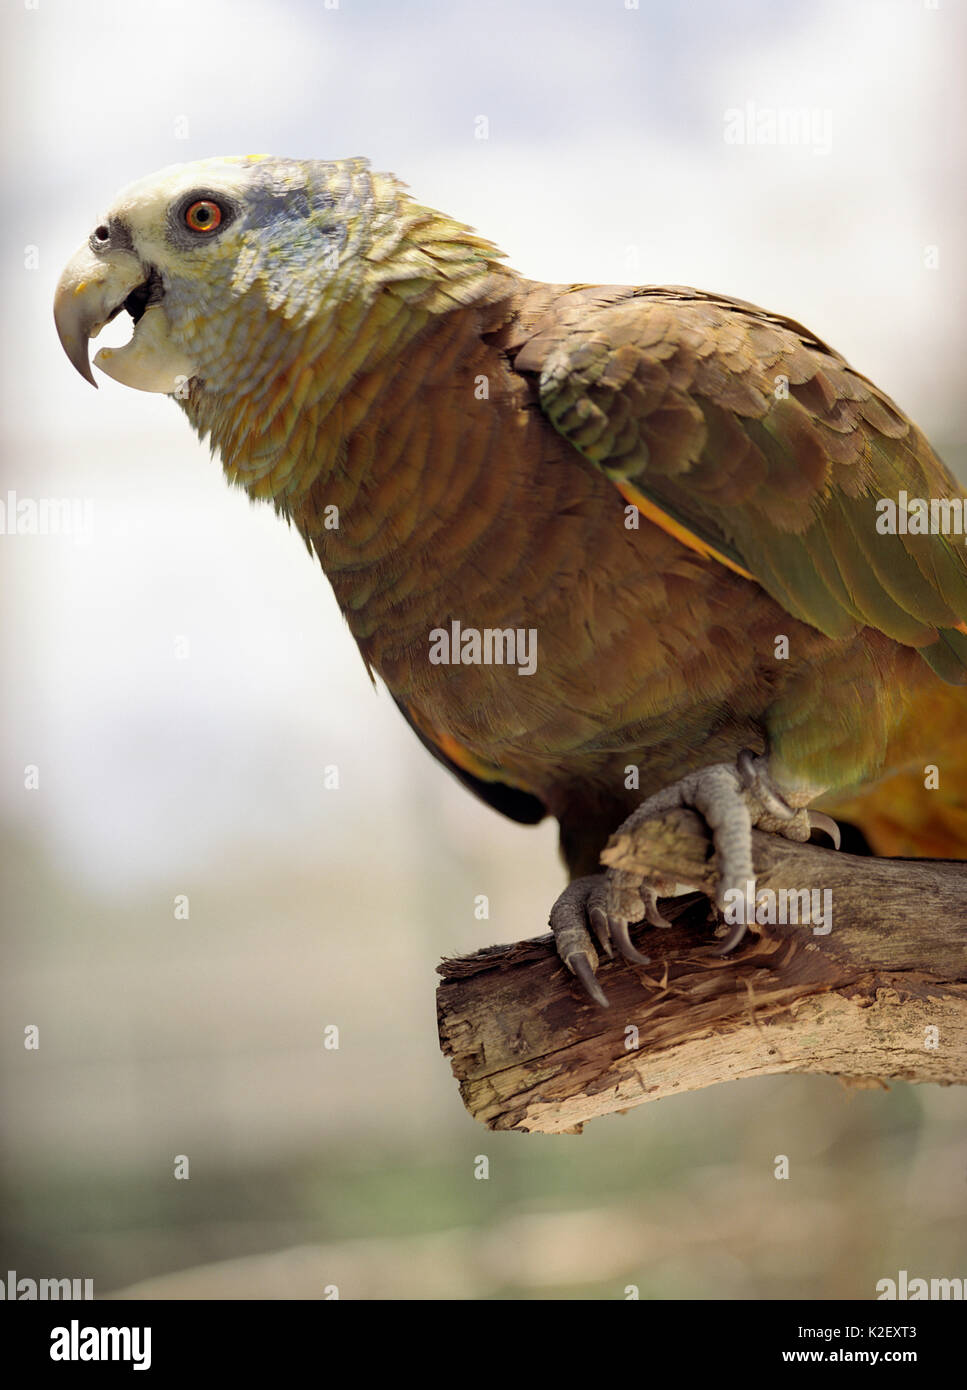 A rare St. Vincent Amazon parrot.Georgetown, St. Vincent Stock Photo